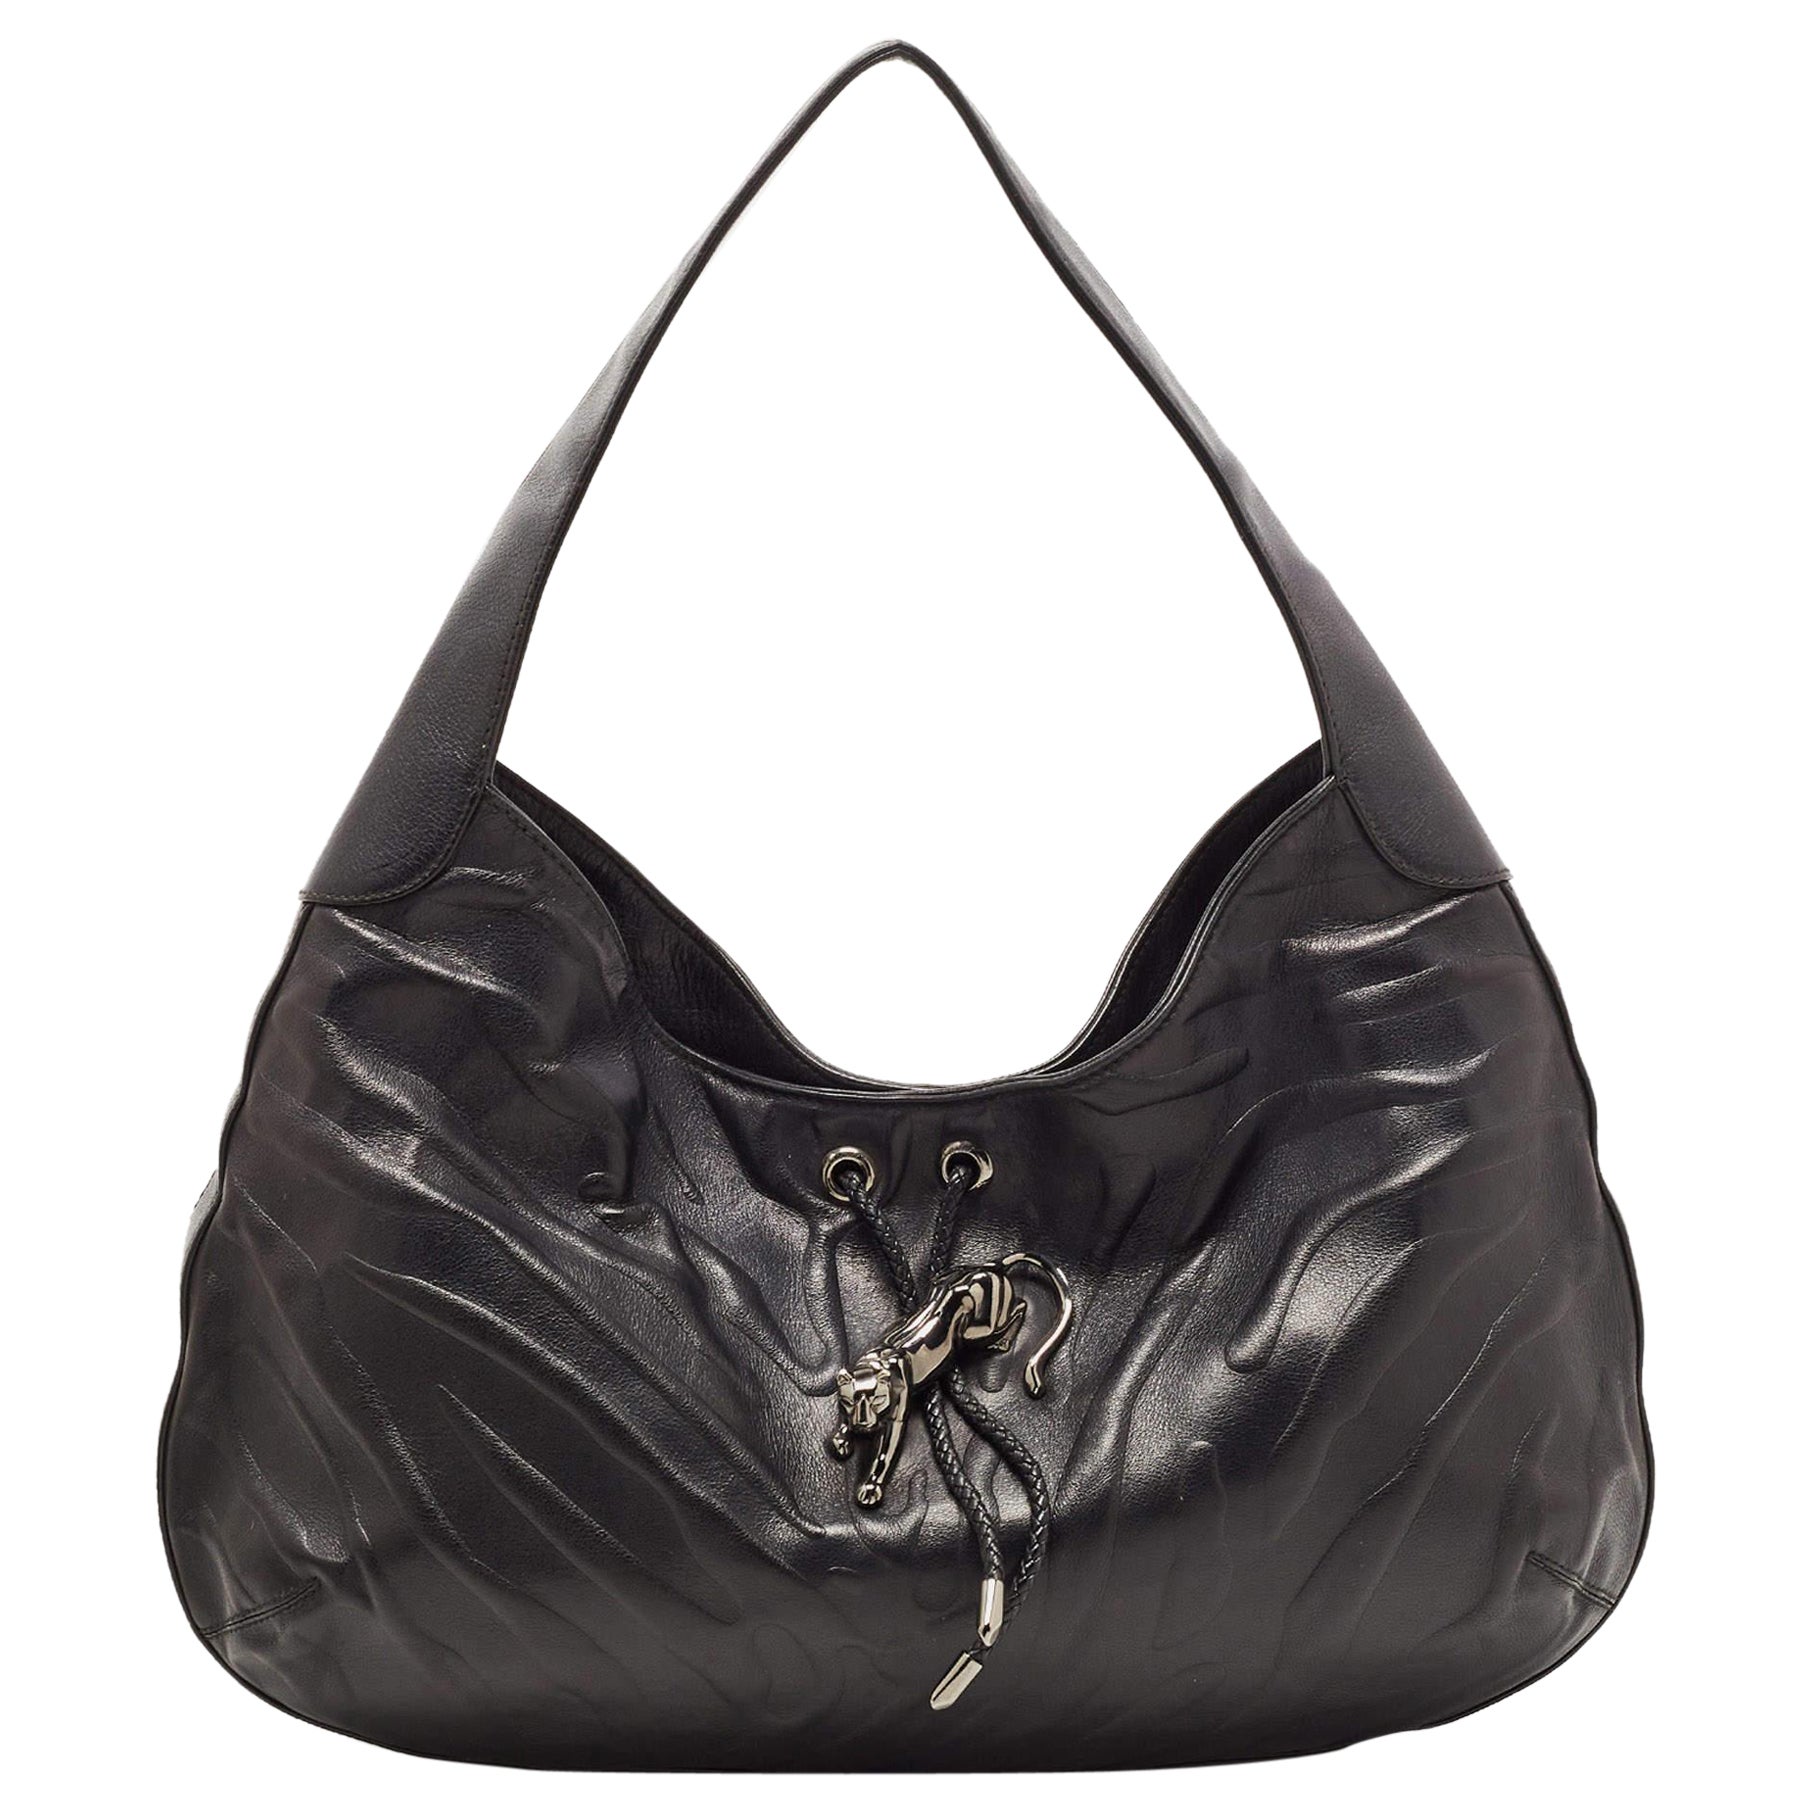 Alfredo Versace Hobo/ Shoulder Bag, Women's Fashion, Bags